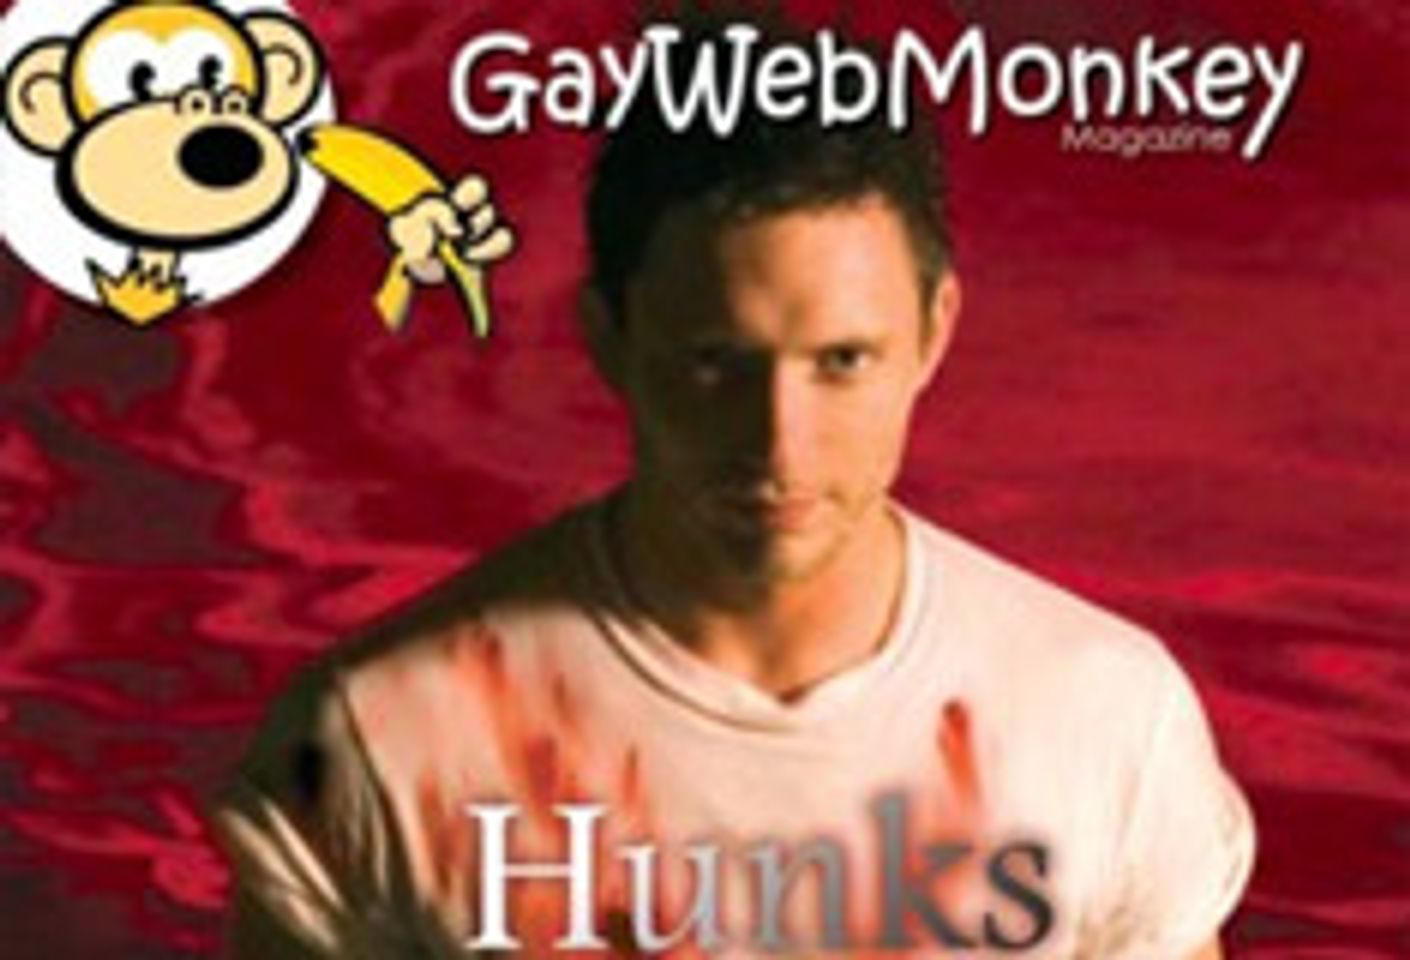 Gay Web Monkey Magazine Will Go Bi-Monthly in 2006